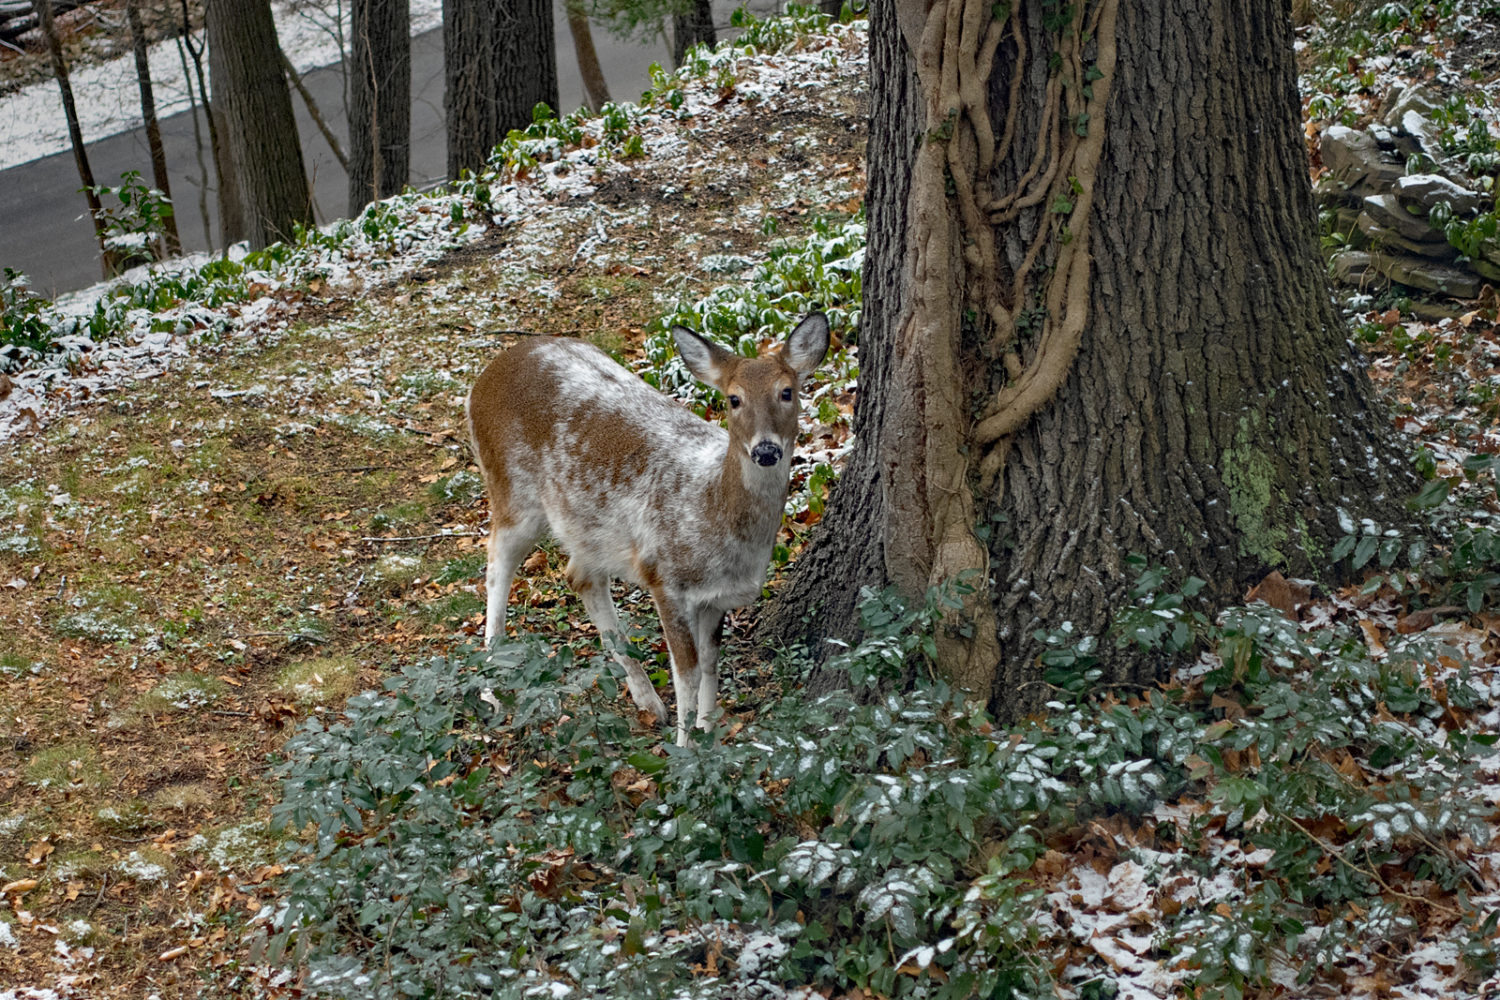 Piebald deer in backyard